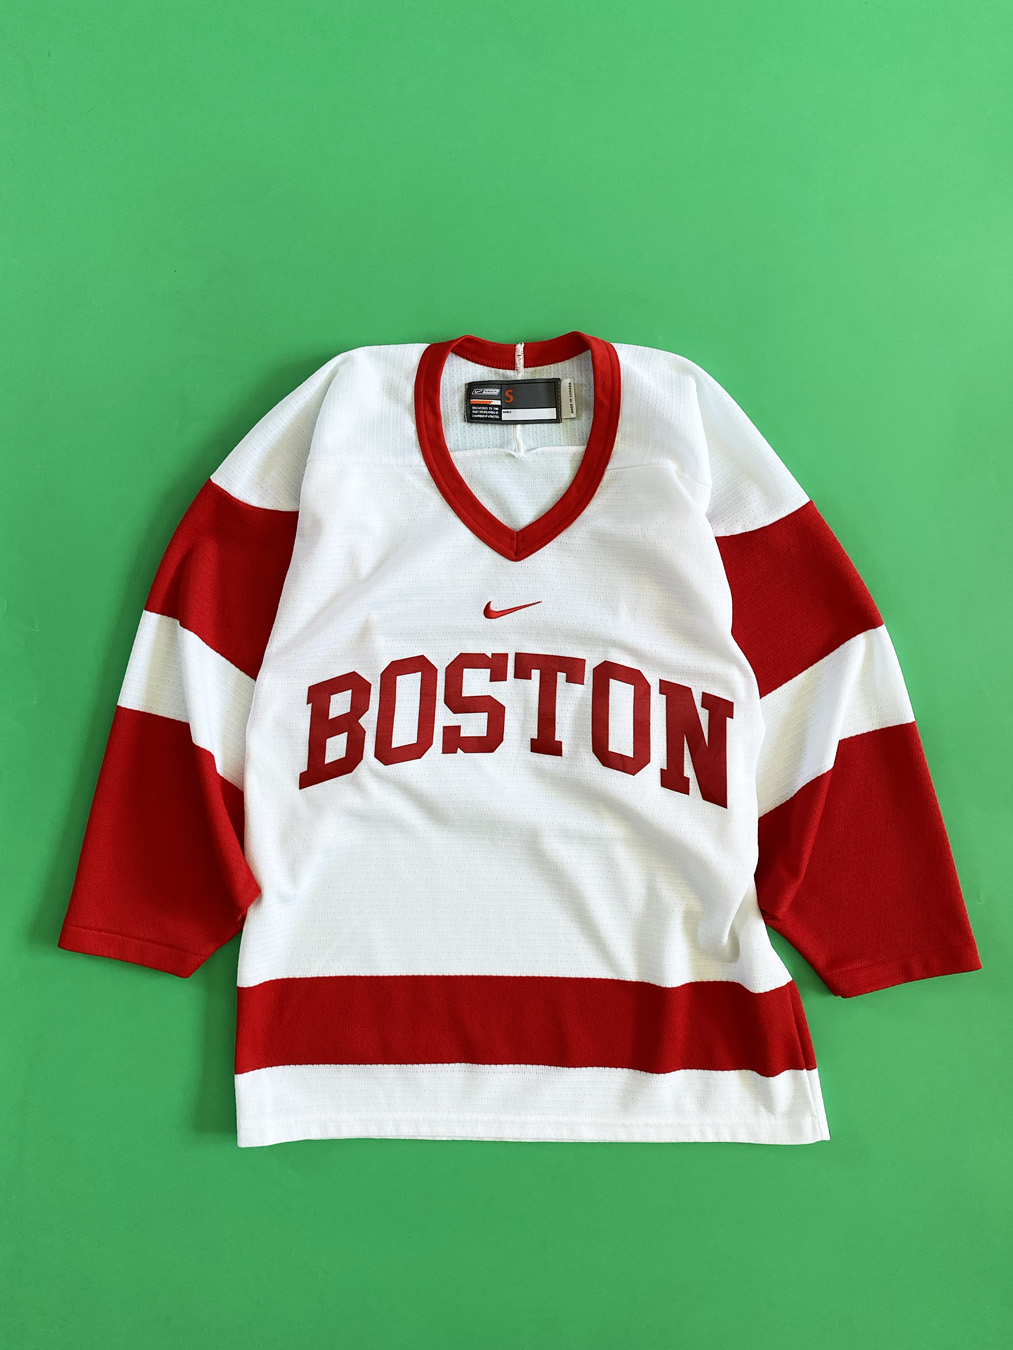 Boston University Hockey Gear, Boston University Hockey T-Shirts